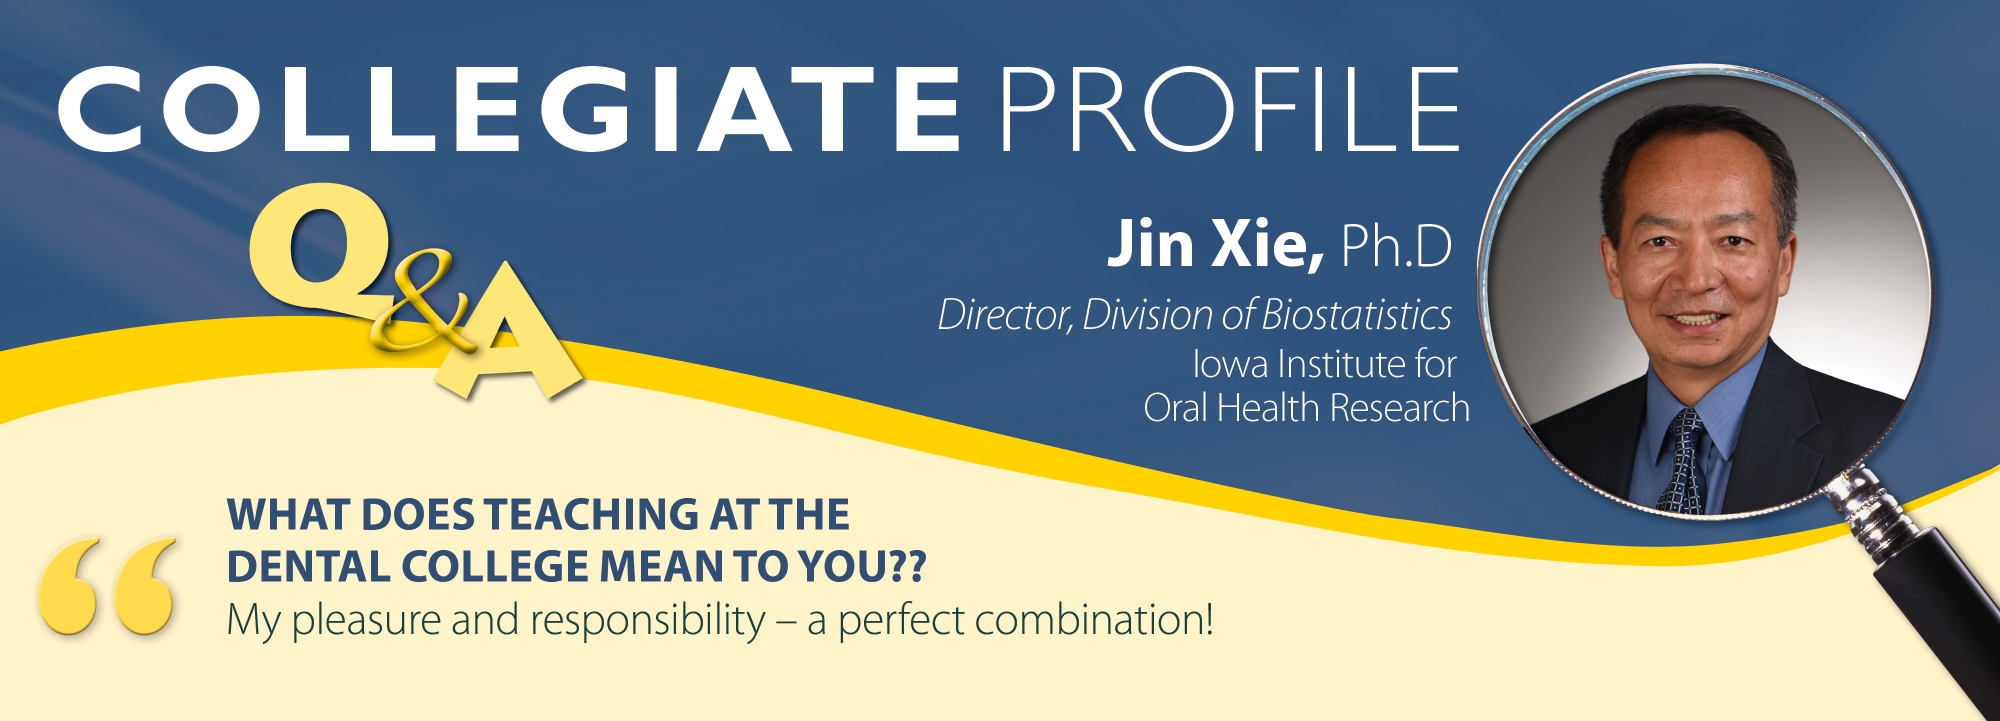 collegiate profile for jin xie